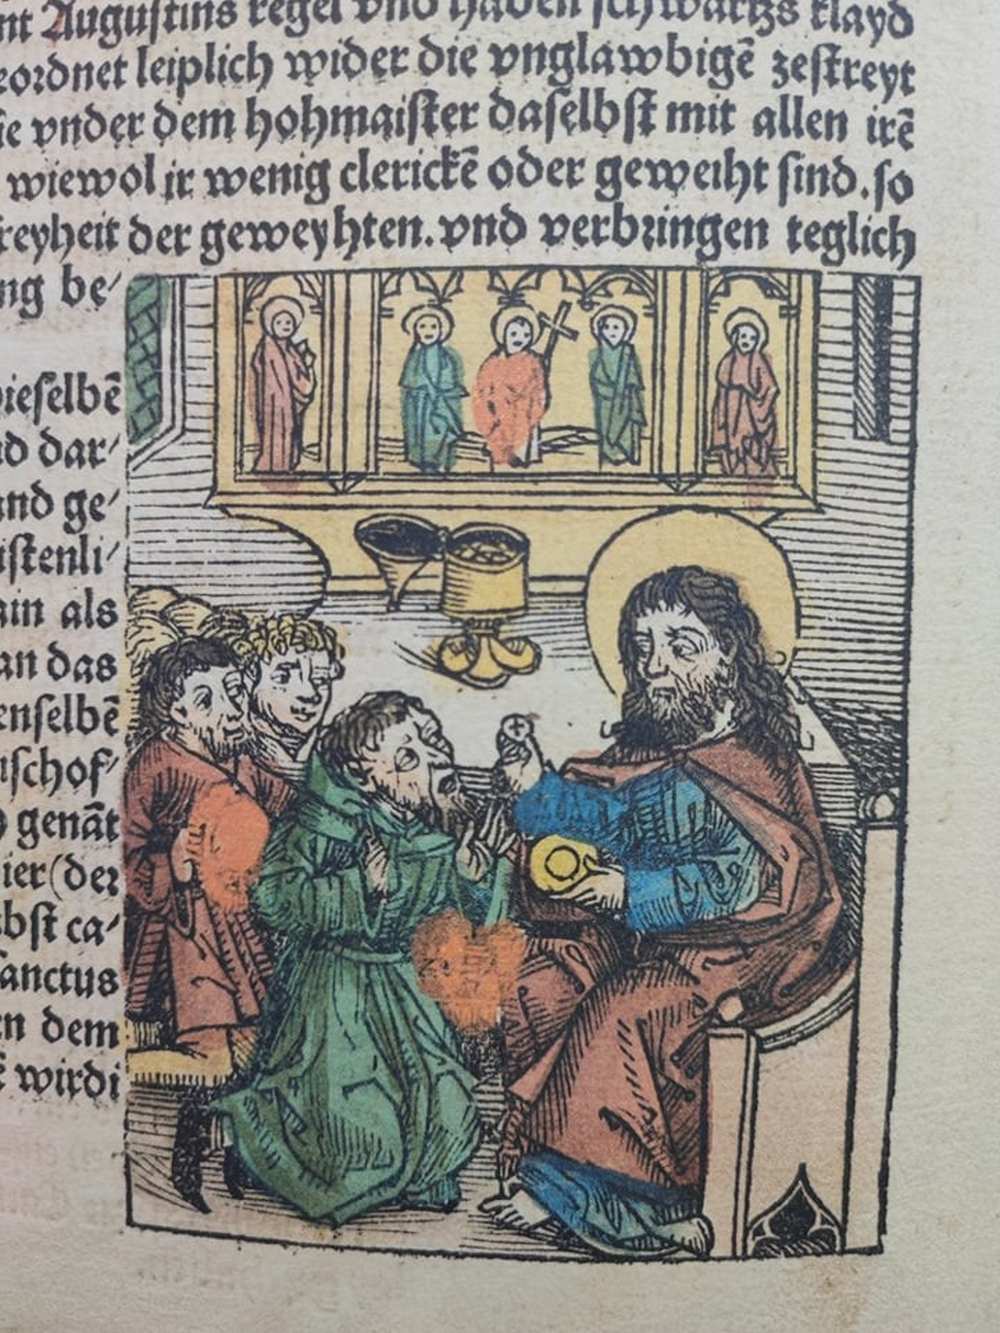 Krisztus megáldoztatja híveit. In: Schedel, Hartmann, Liber chronicarum: Das Buch der Chroniken, Nürnberg, 1493. Számos színezett fametszettel. RNYT, Inc. 88 – Régi Nyomtatványok Tára